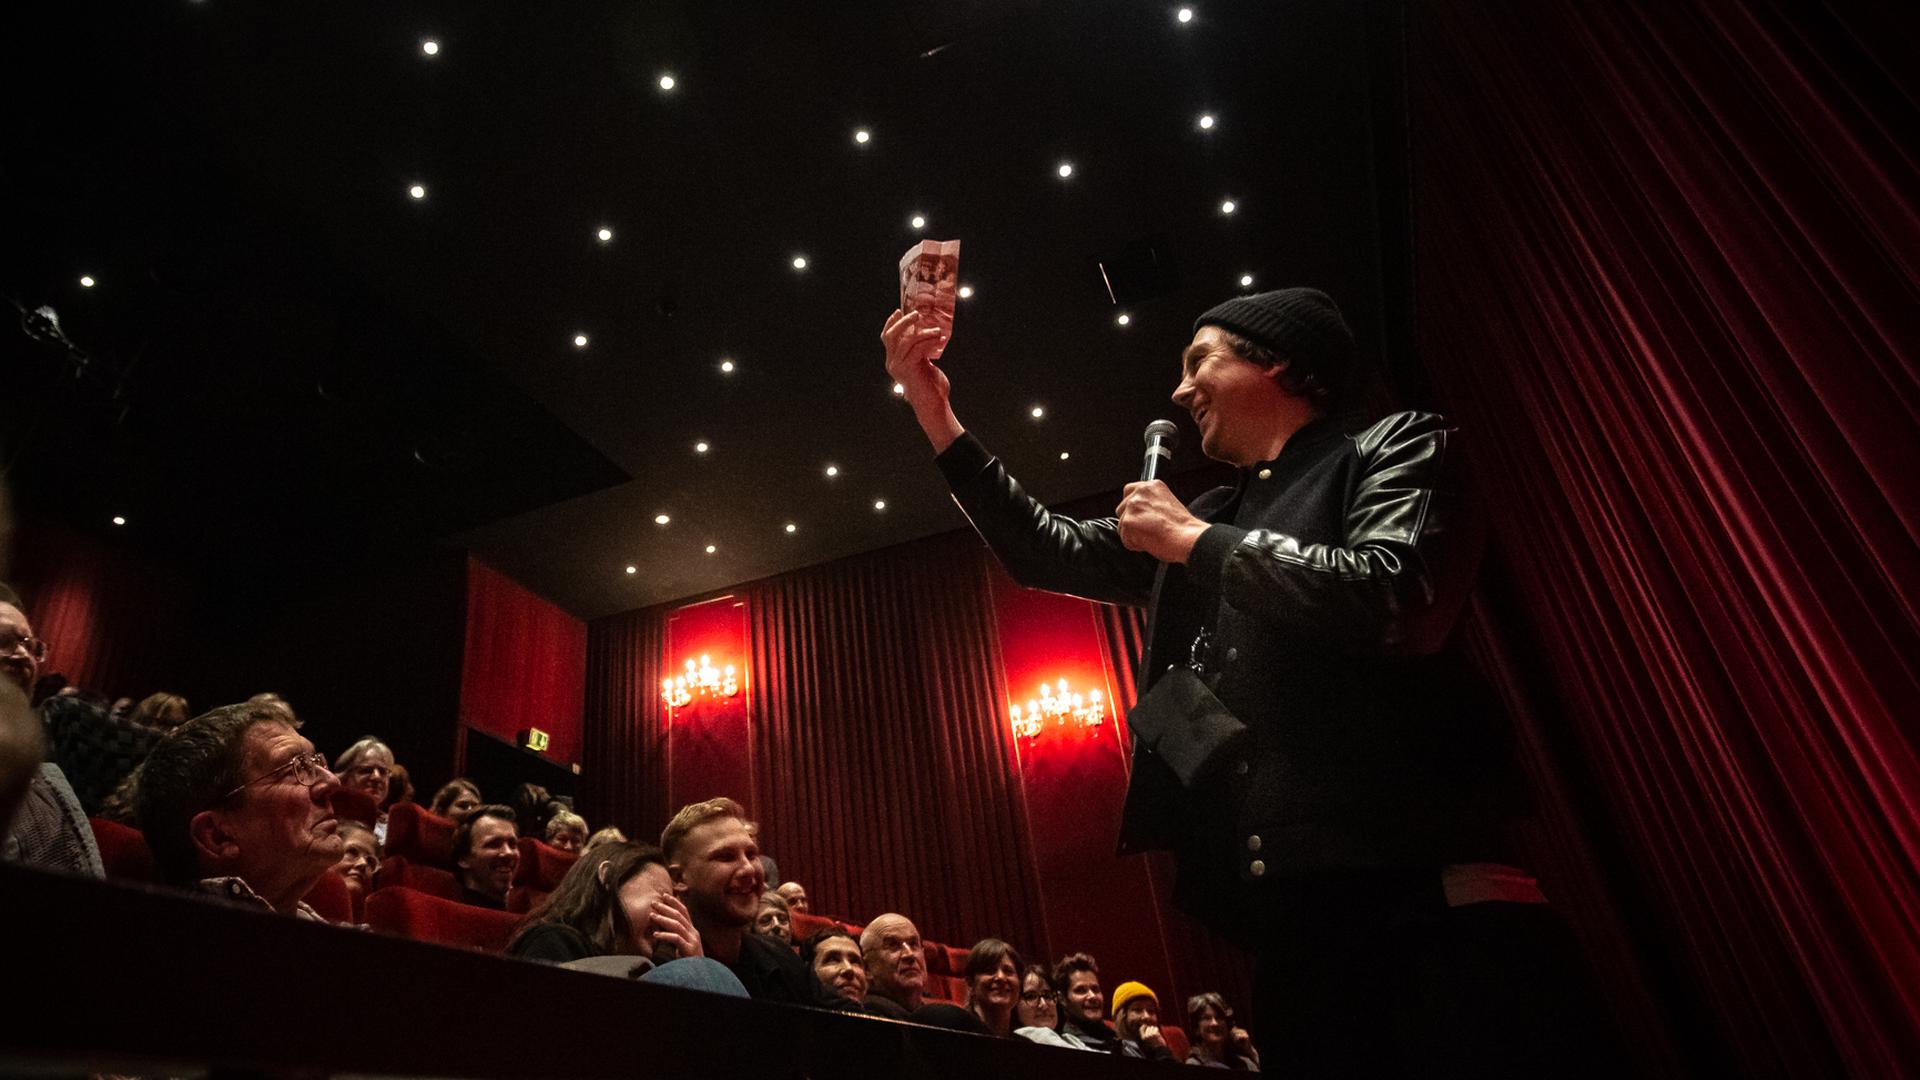 Lars Eidinger hält eine Popcorn-Tüte aus dem Publikum im Karlsruher Kino Schauburg hoch.  